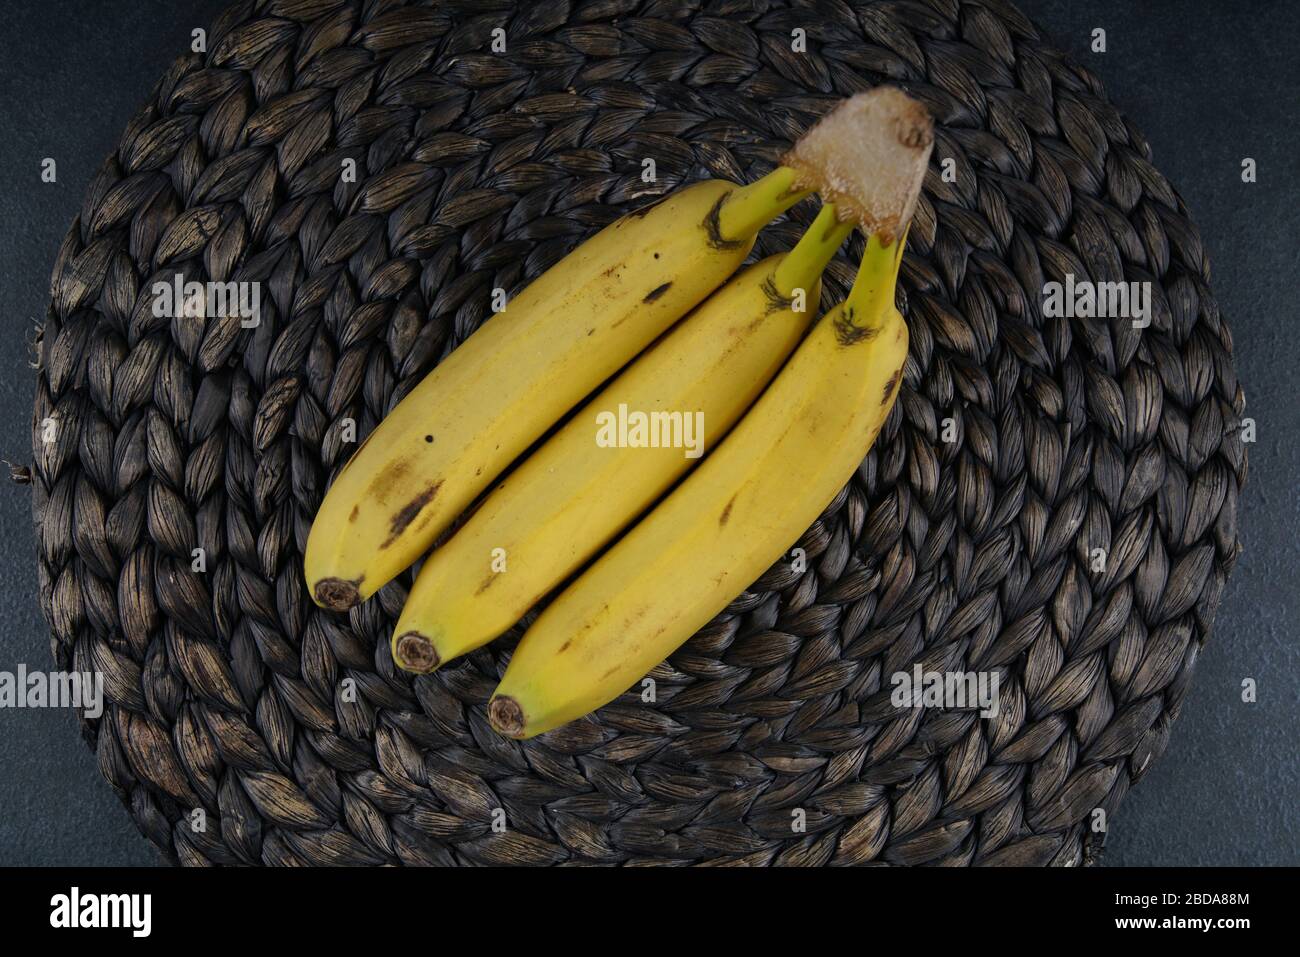 Fresh banana on dark back ground Stock Photo